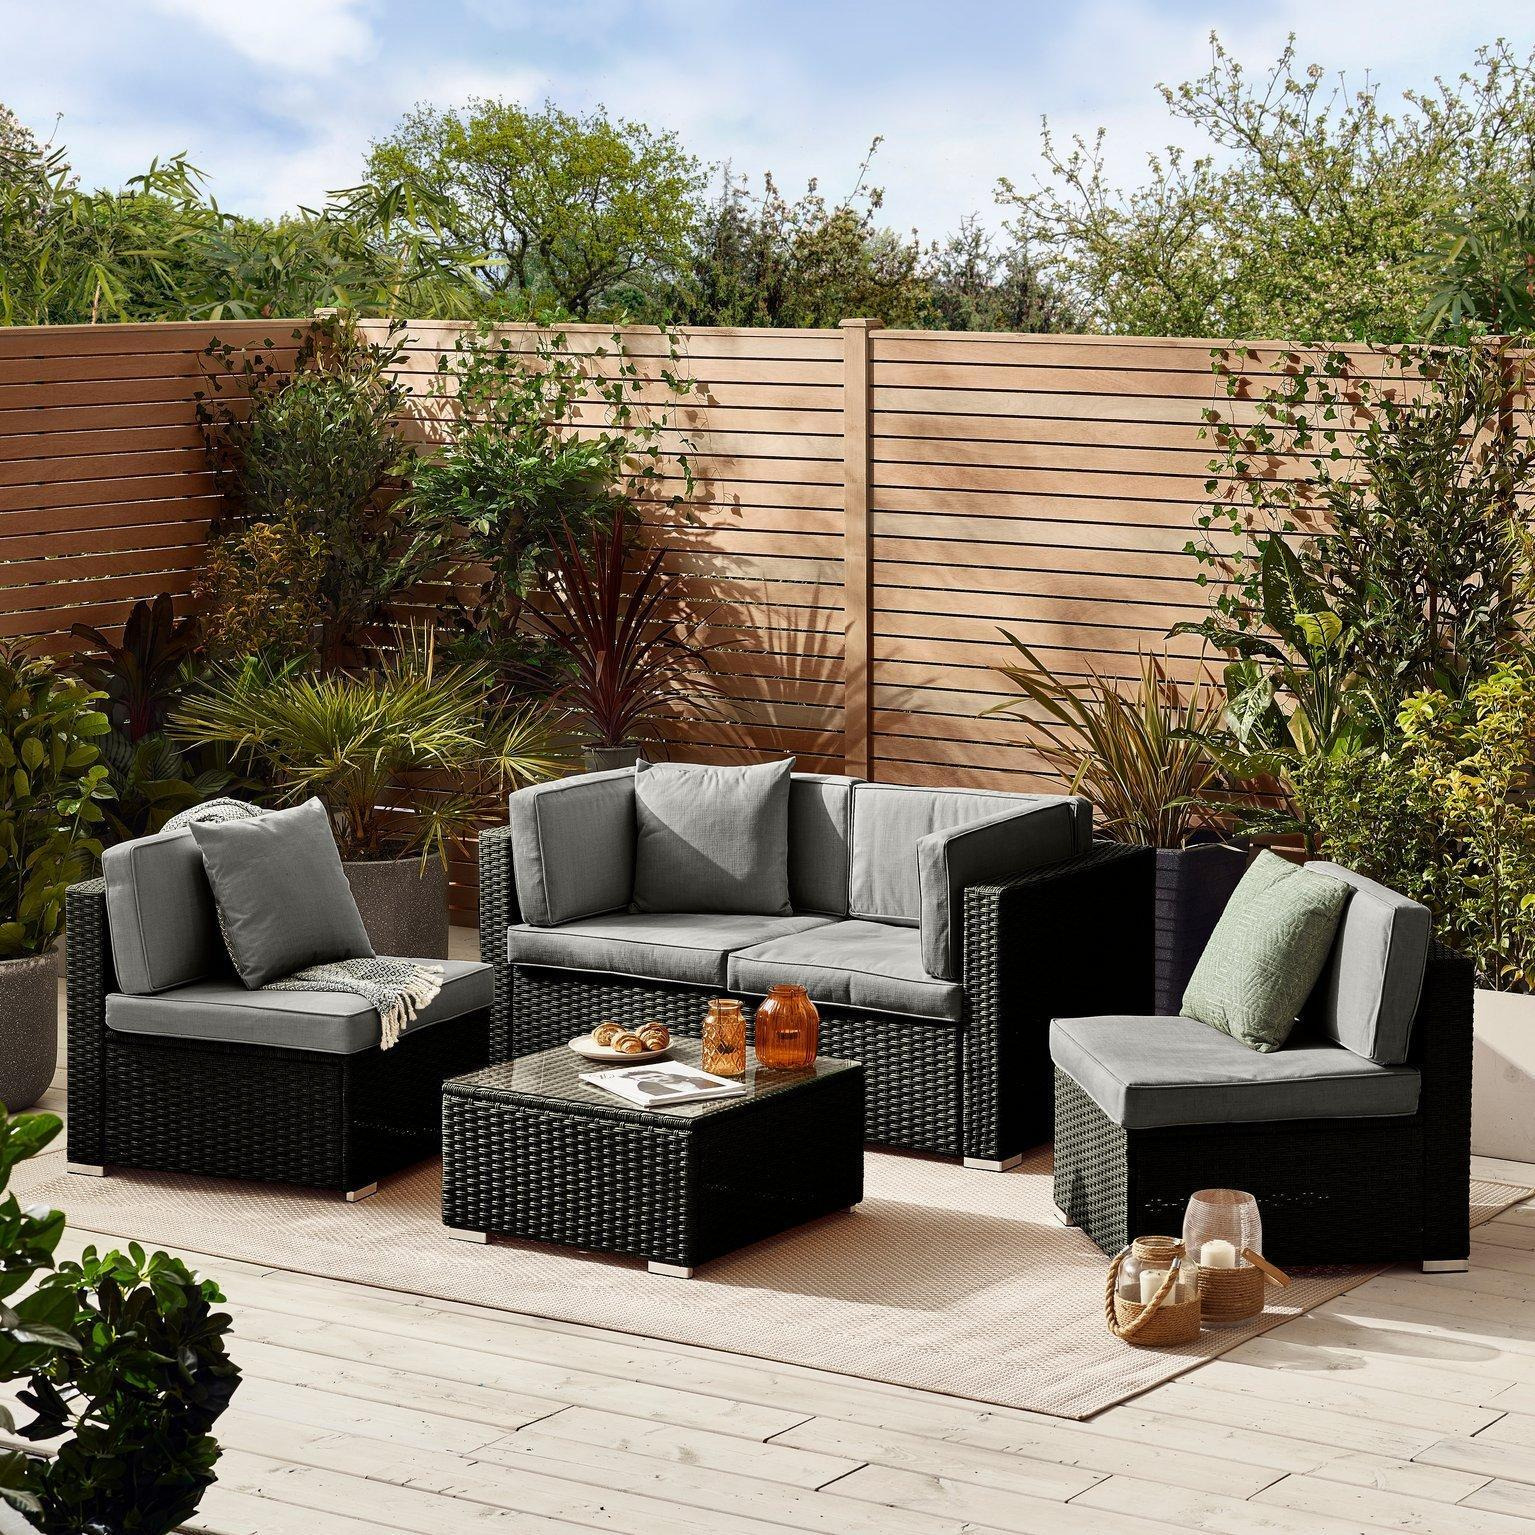 Orlando 4 Seat Modular Outdoor Garden Sofa - Rattan Garden Sofa with Thick Cushions - Garden Coffee Table - image 1